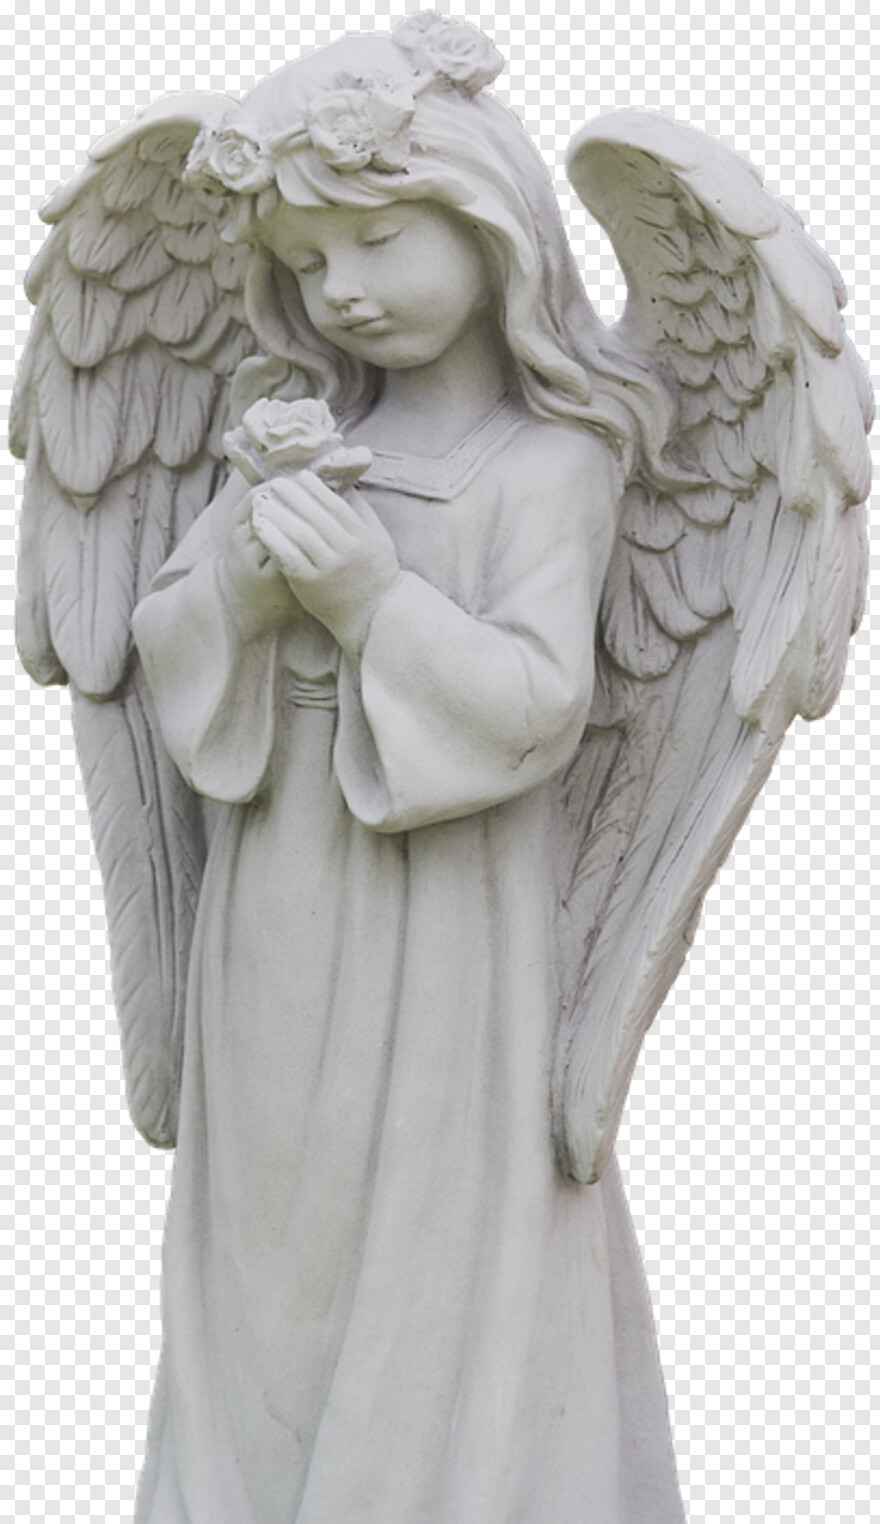 angel-wings # 515718